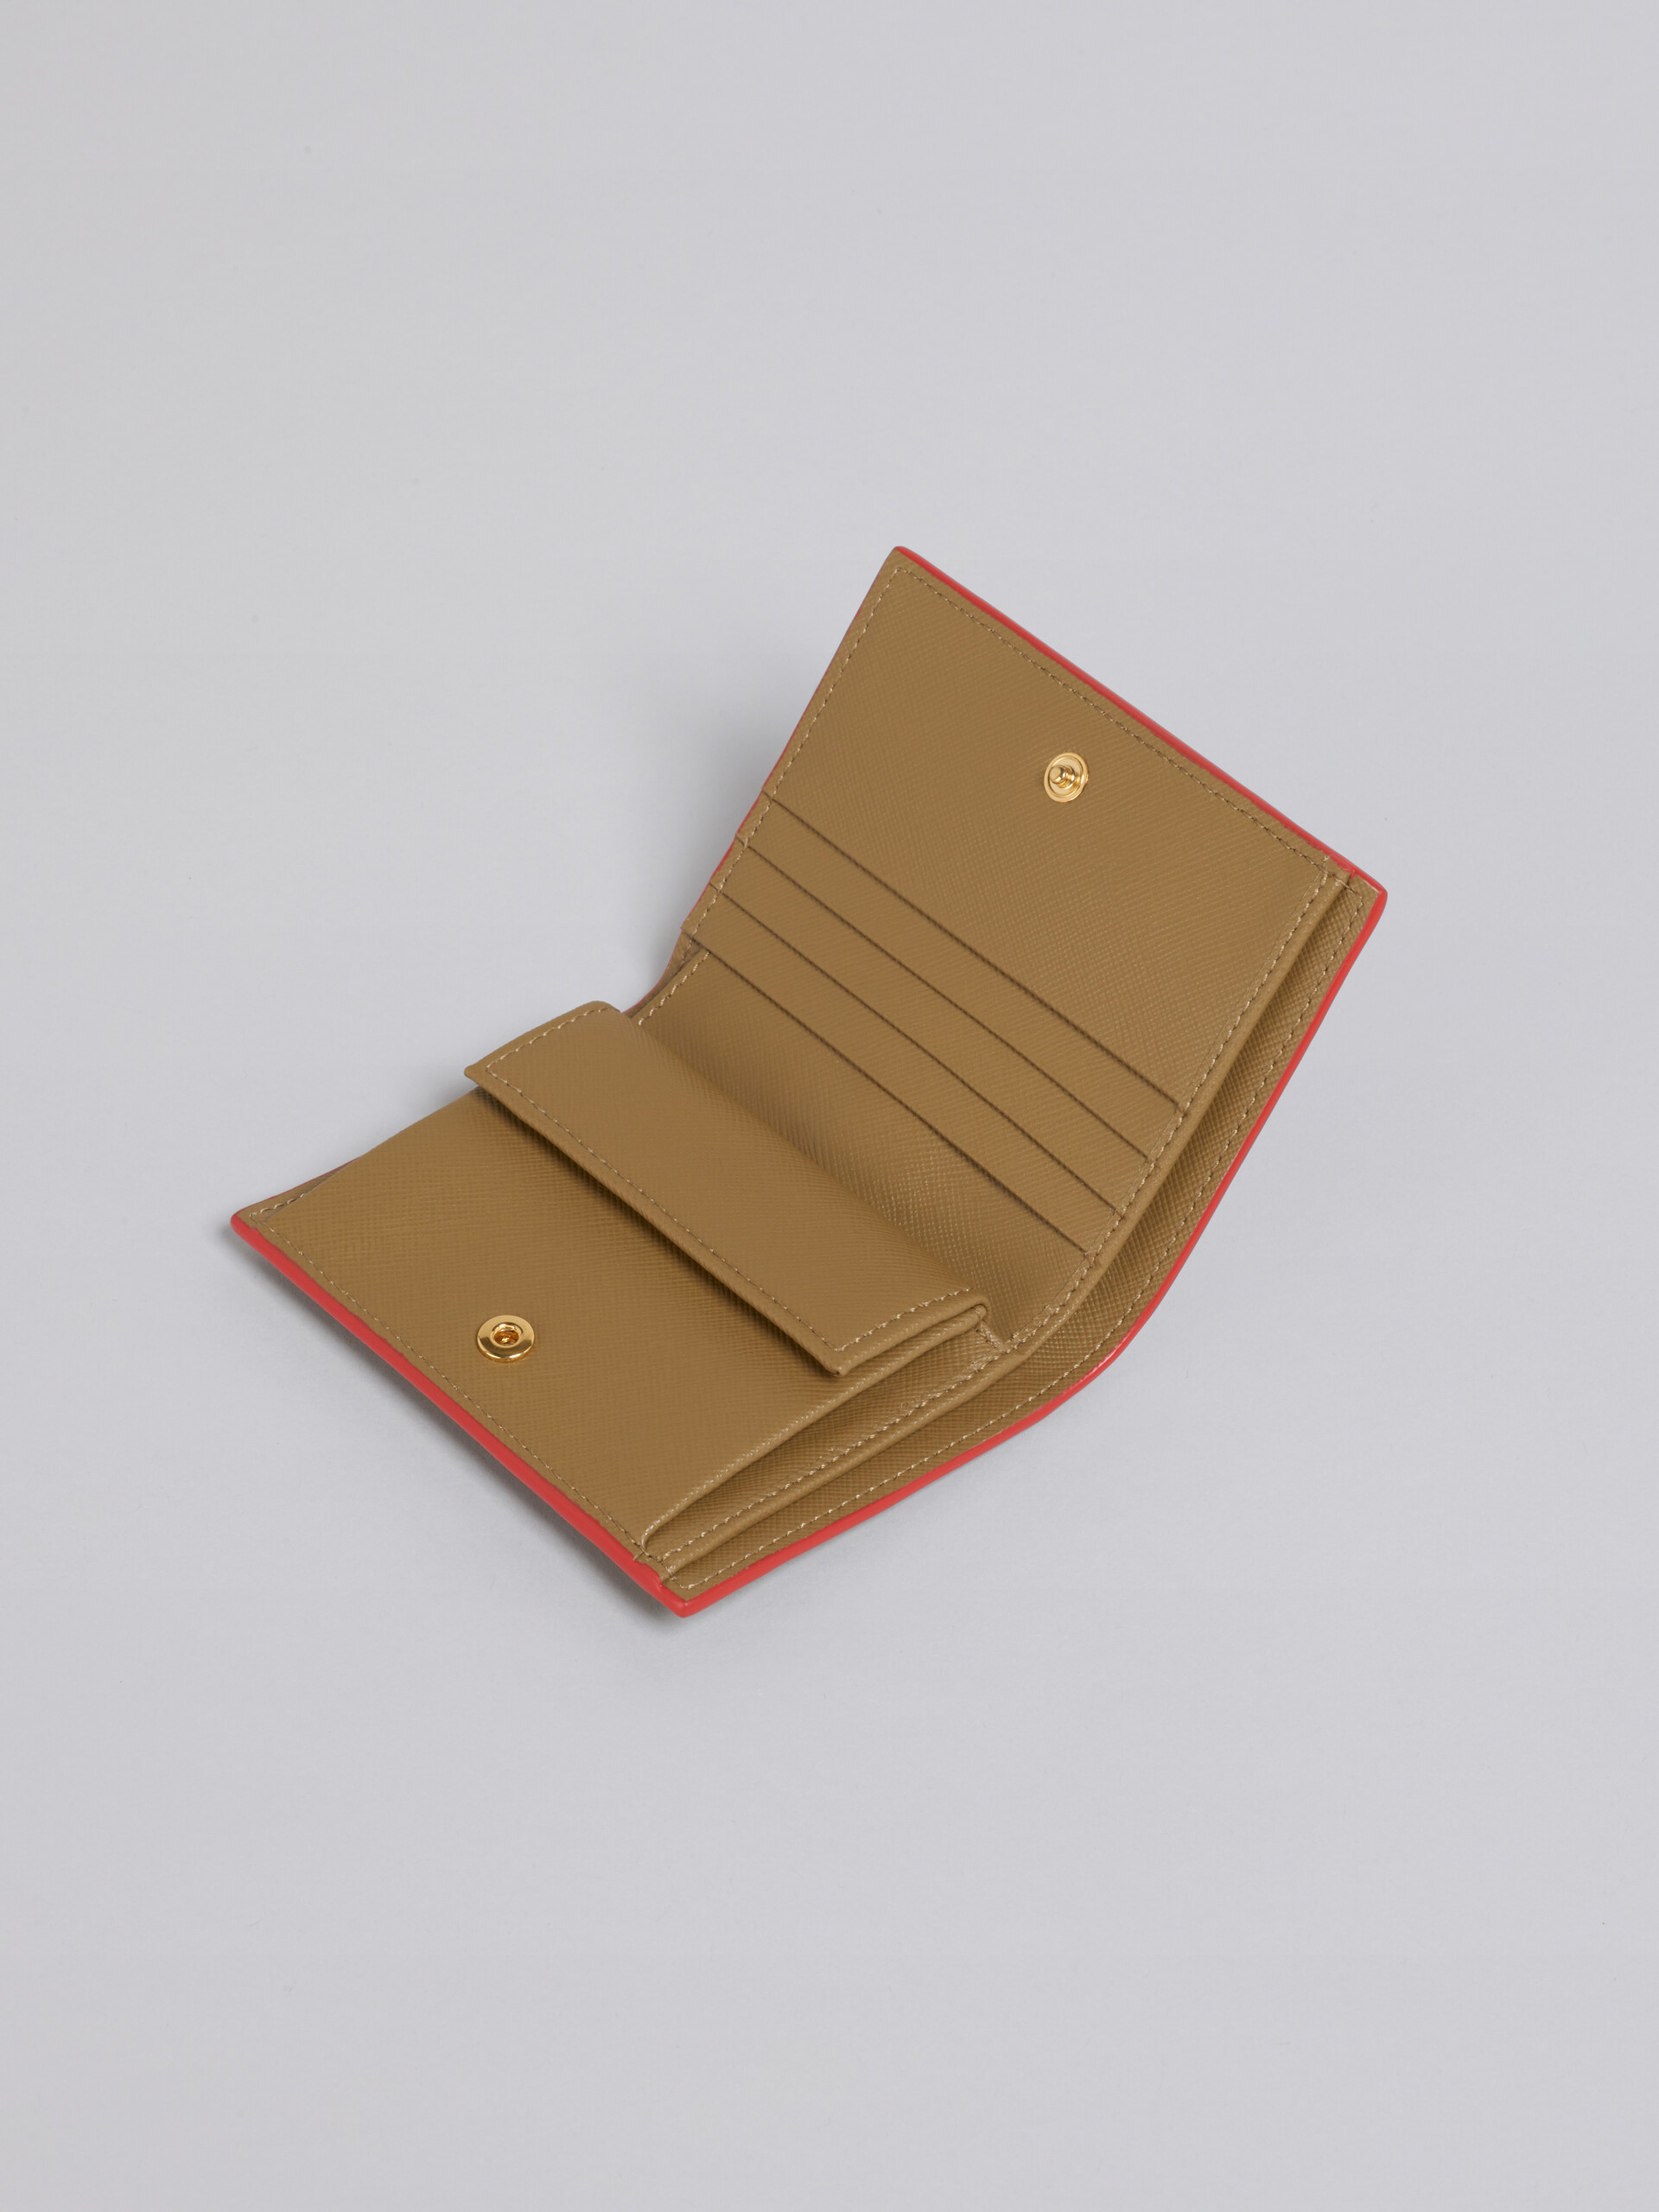 Grüne zweiteilige Brieftasche aus Saffiano-Kalbsleder - Brieftaschen - Image 4